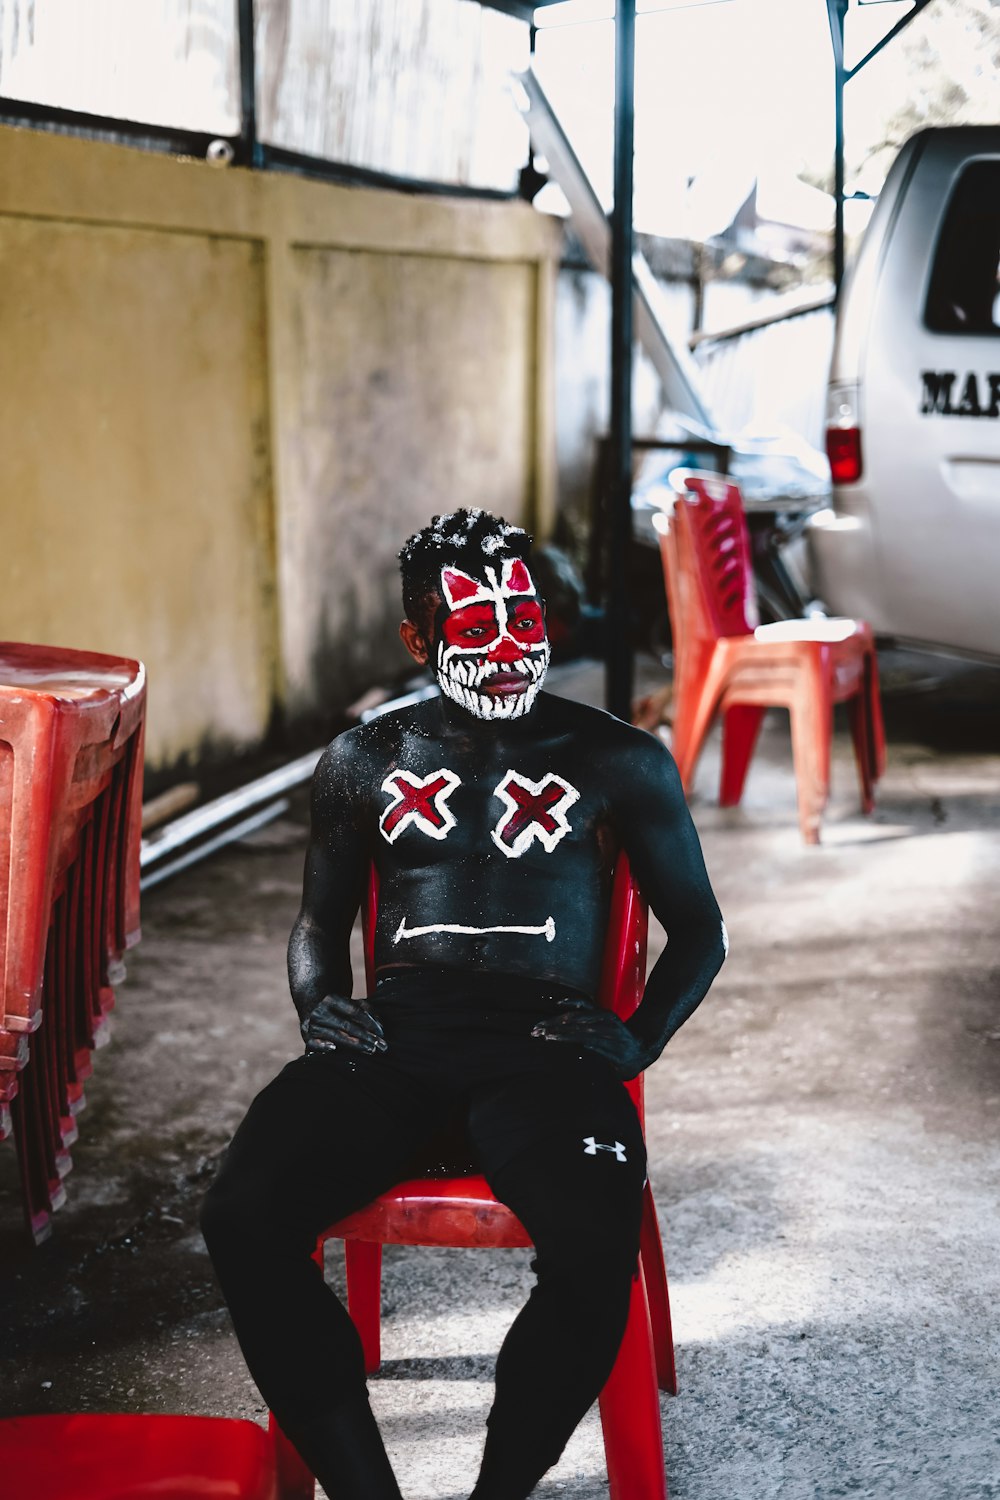 Mann in schwarz-weißer Maske sitzt auf rotem Plastikstuhl